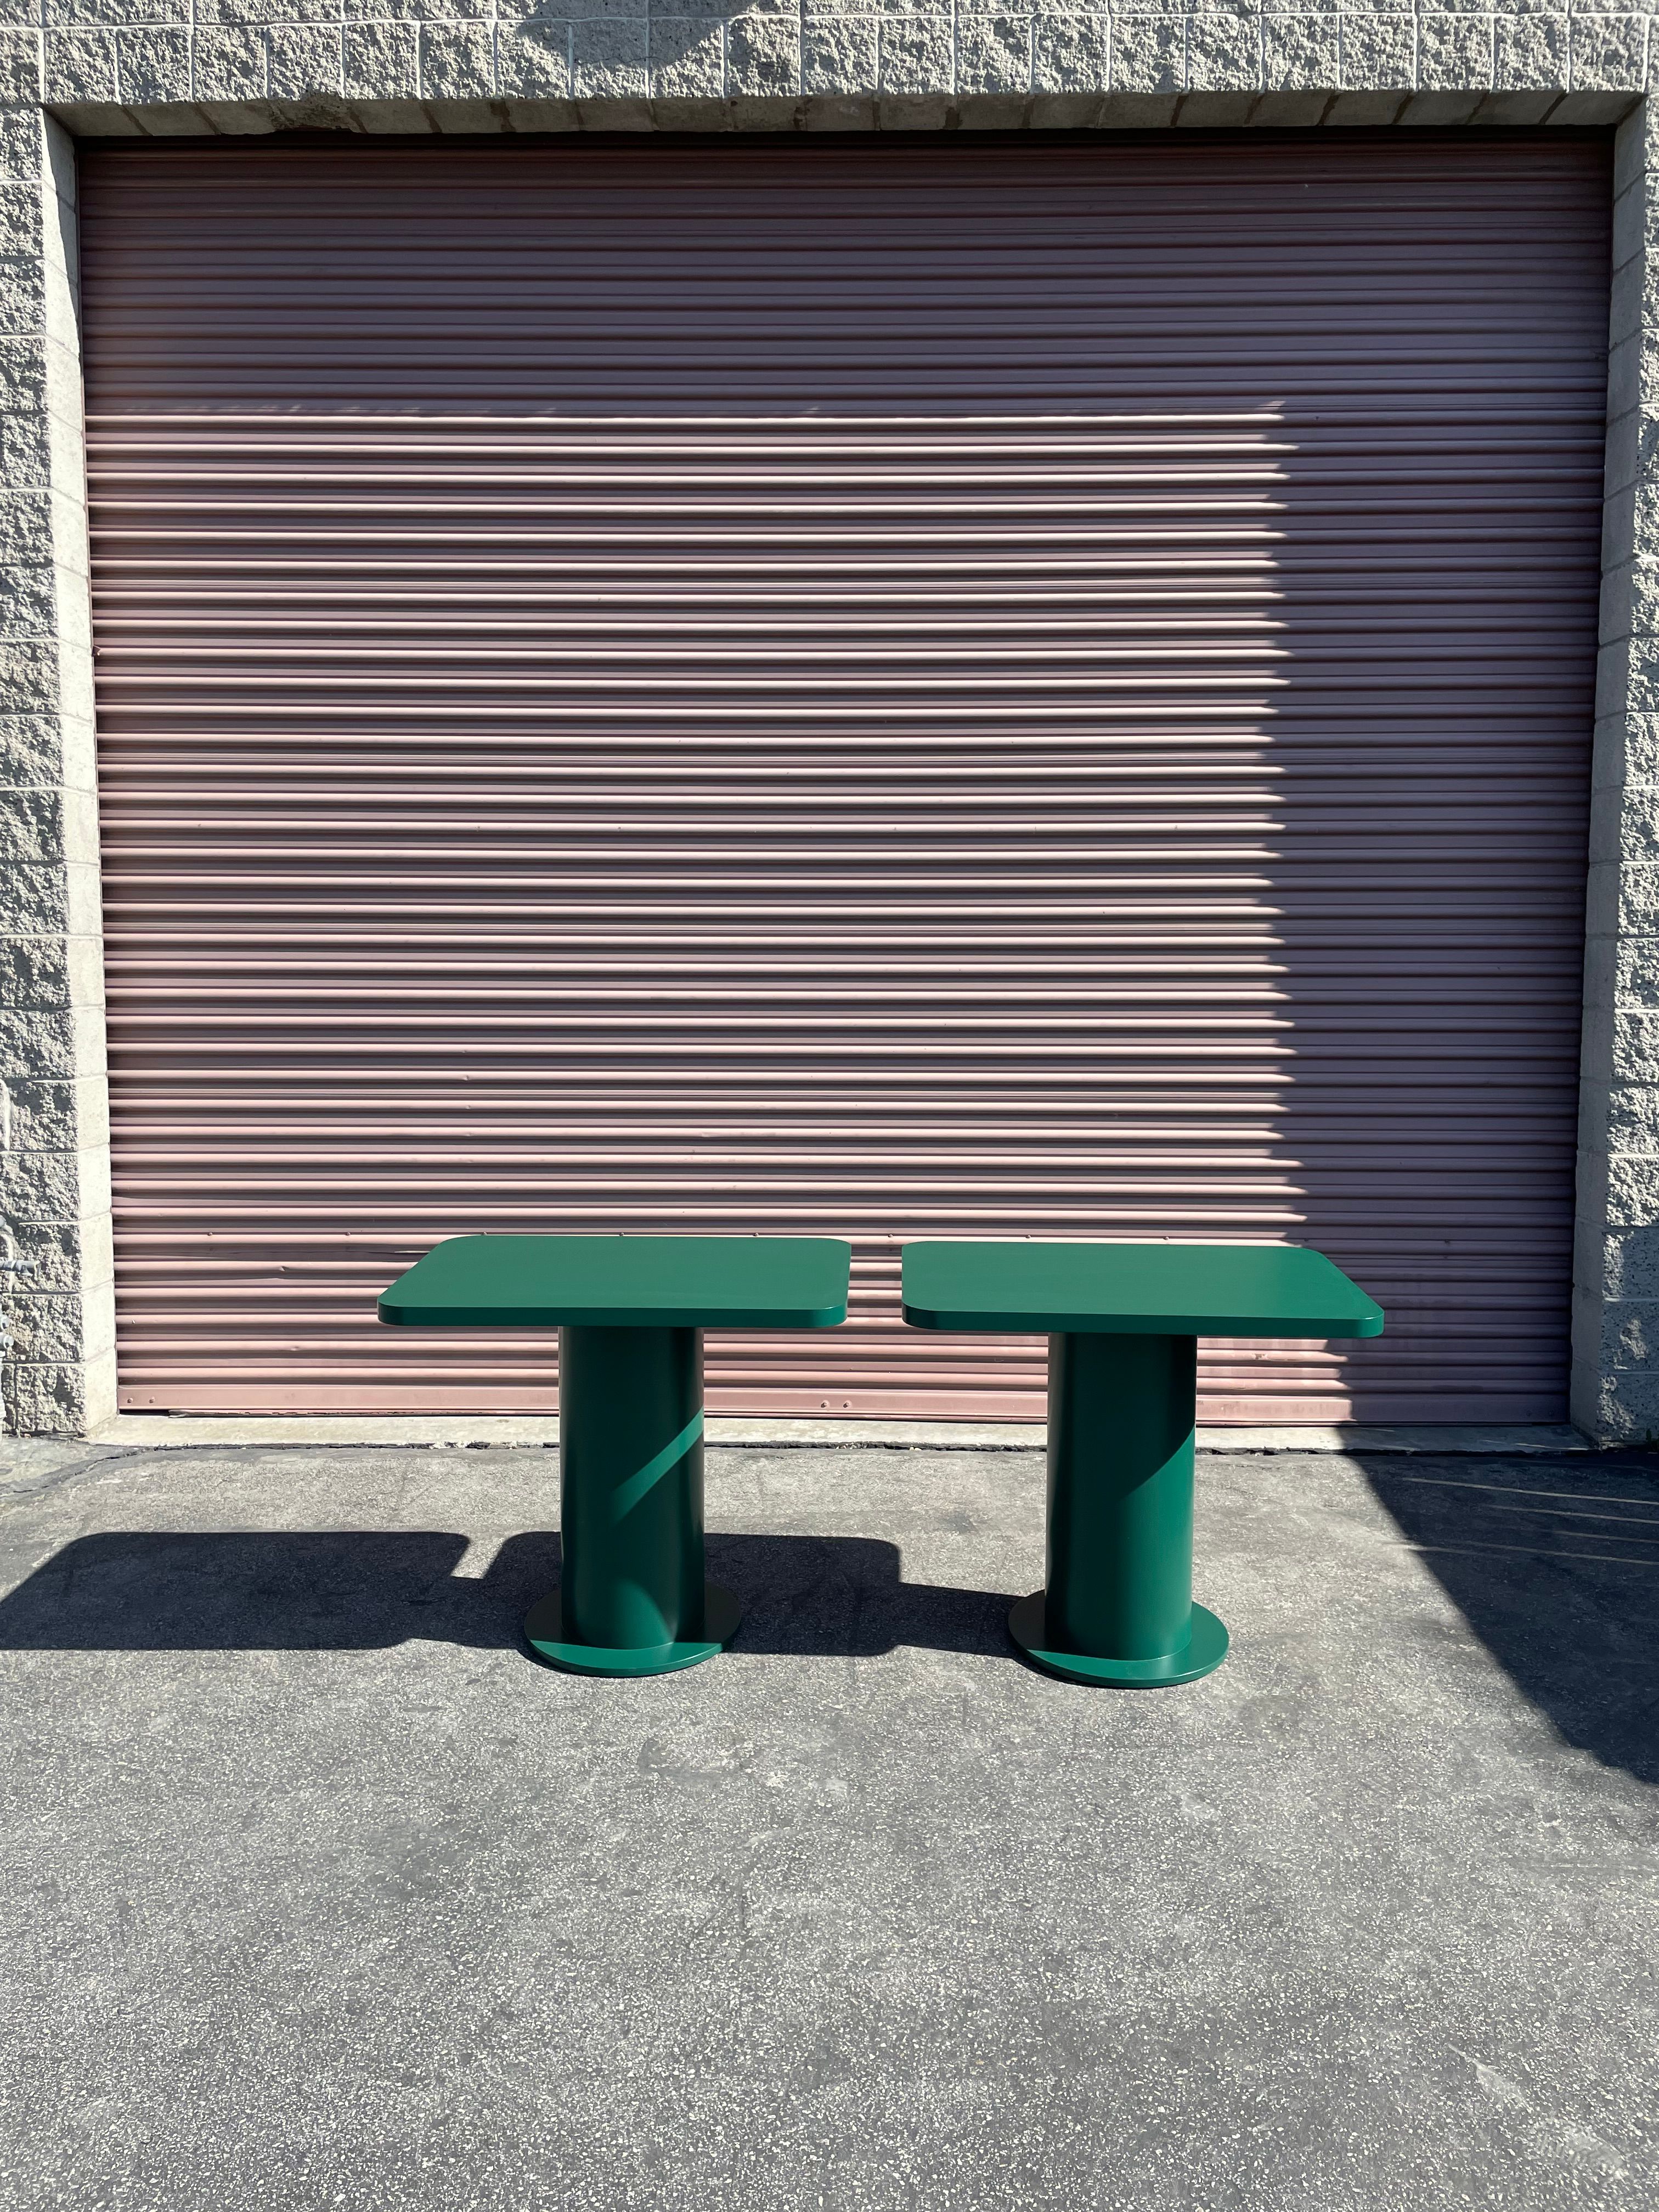  Pedestal Tables - Folklor LA product image 3